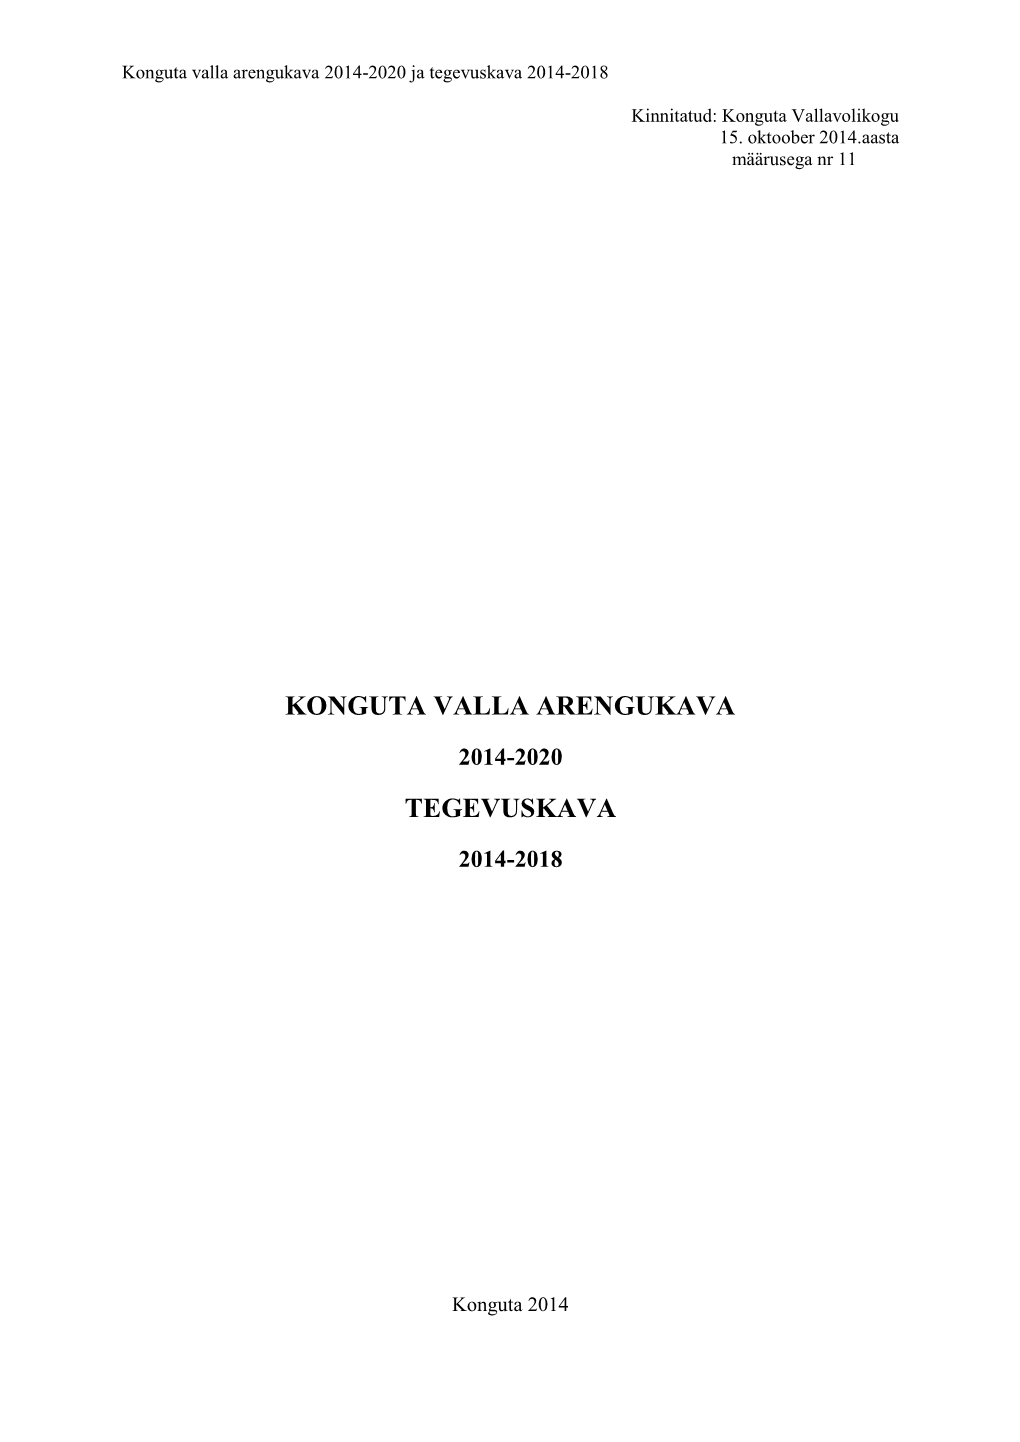 Konguta Valla Arengukava 2014-2020 Ja Tegevuskava 2014-2018